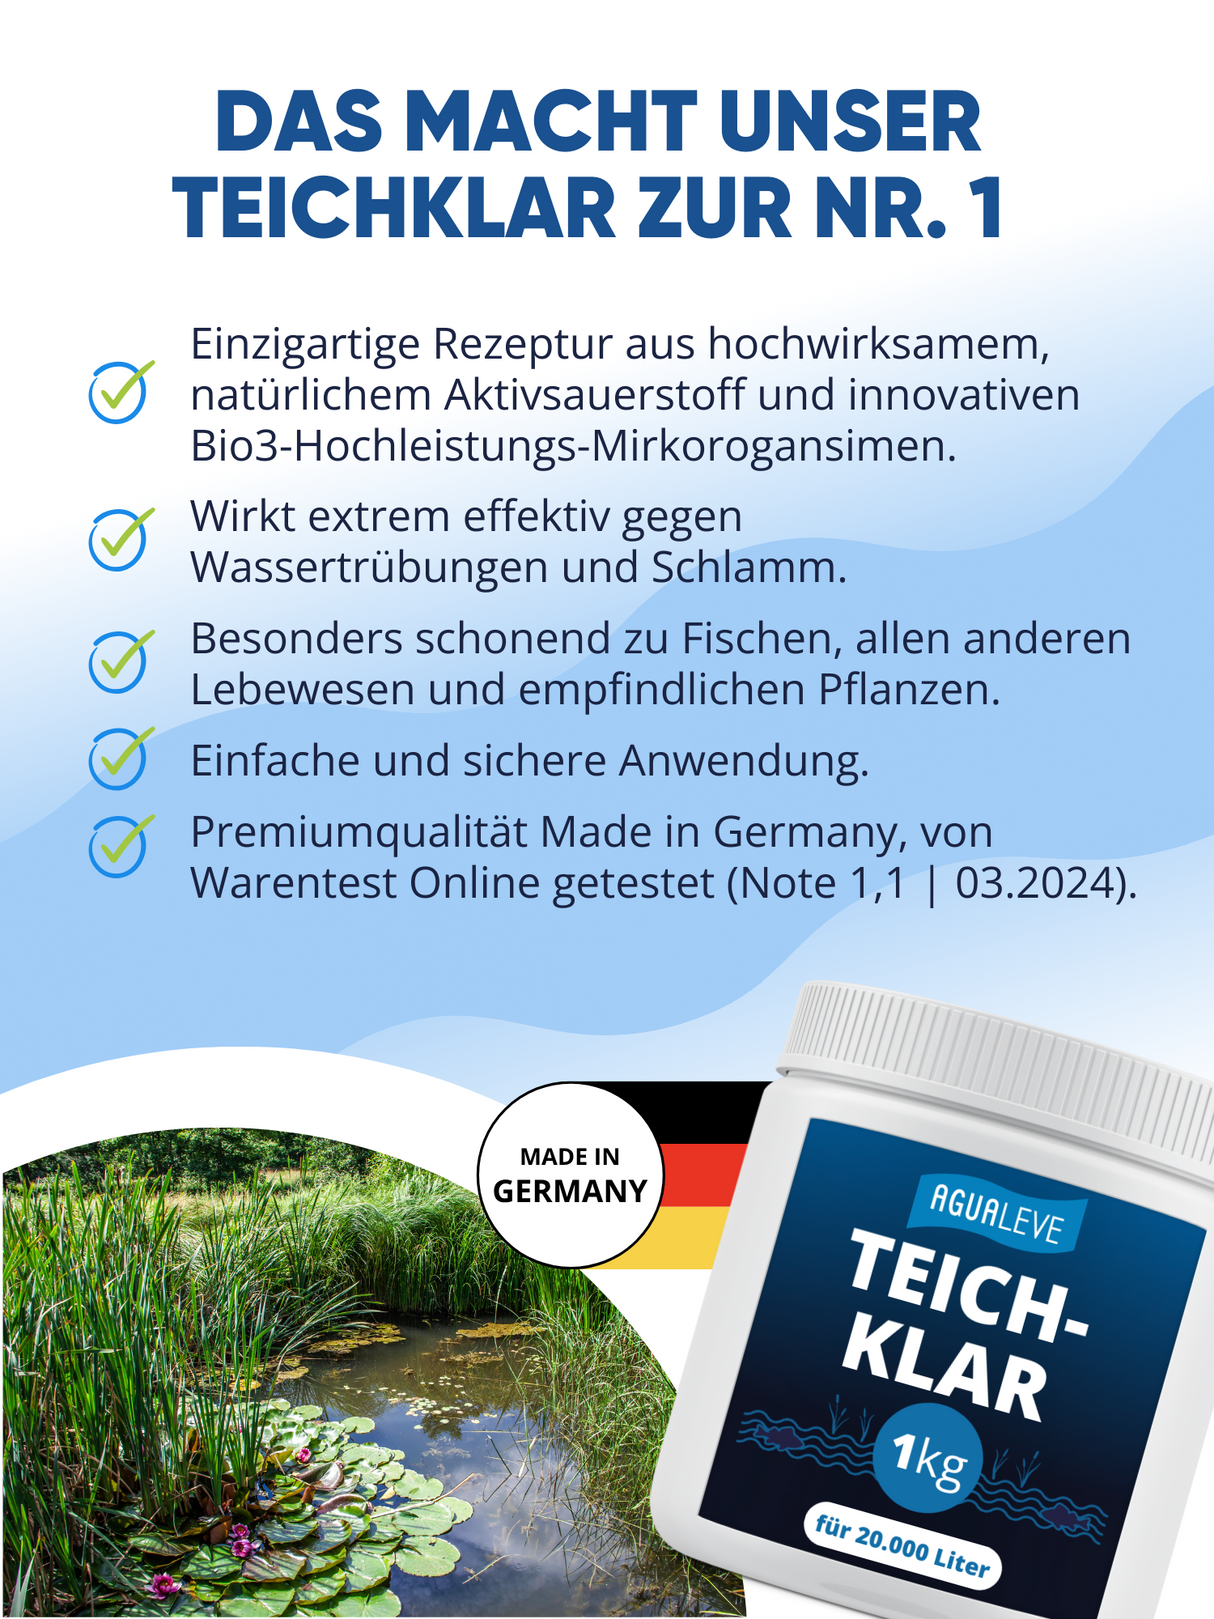 AGUALEVE® Teichklar 1kg | gegen Schwebealgen, grünes & trübes Teichwasser | perfekt für Fischteiche | Markenqualität Made in Germany | für 20.000 Liter Teichwasser | mit Note 1,2 getestet